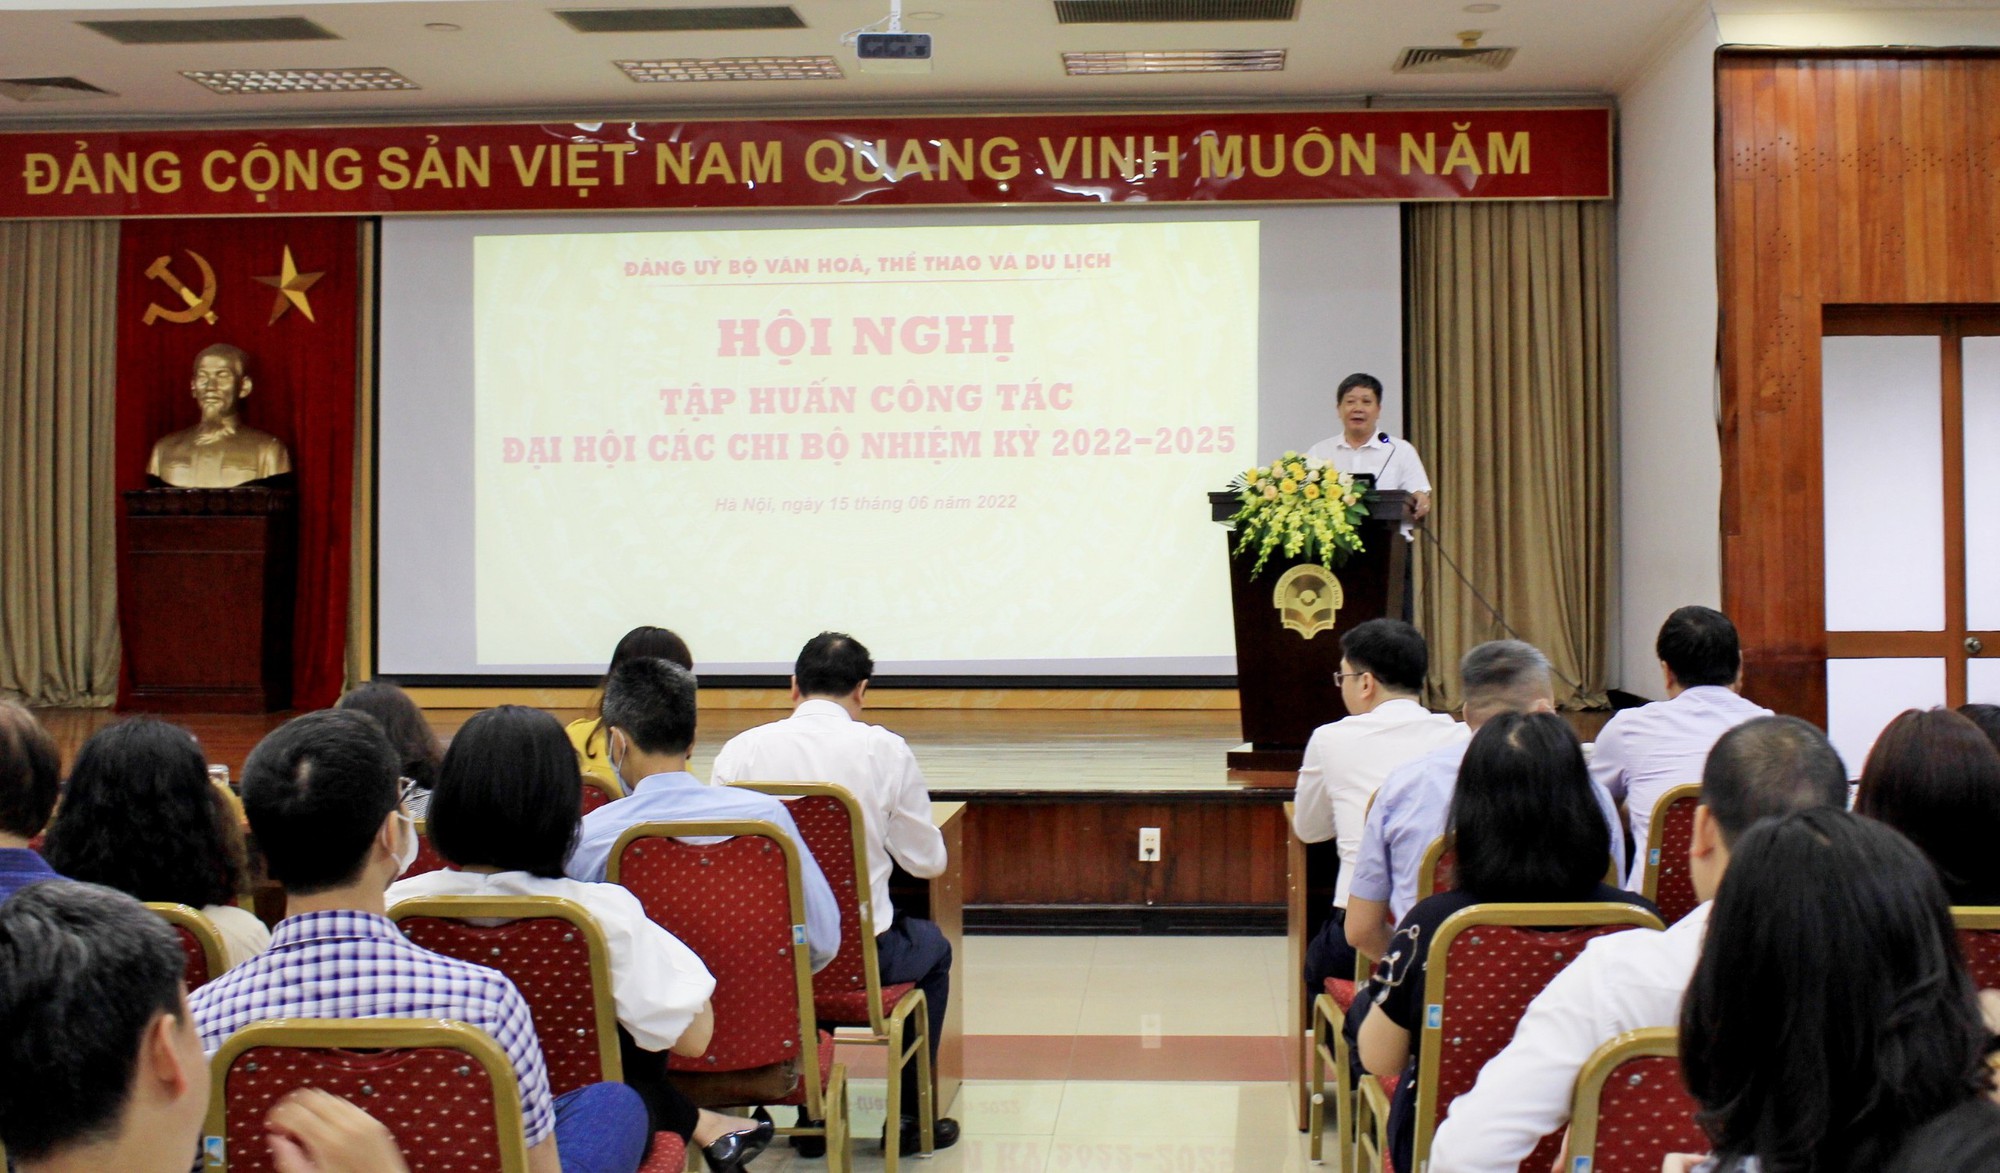 Đảng ủy Bộ VHTTDL tổ chức Hội nghị tập huấn công tác đại hội các chi bộ nhiệm kỳ 2022 - 2025 - Ảnh 1.